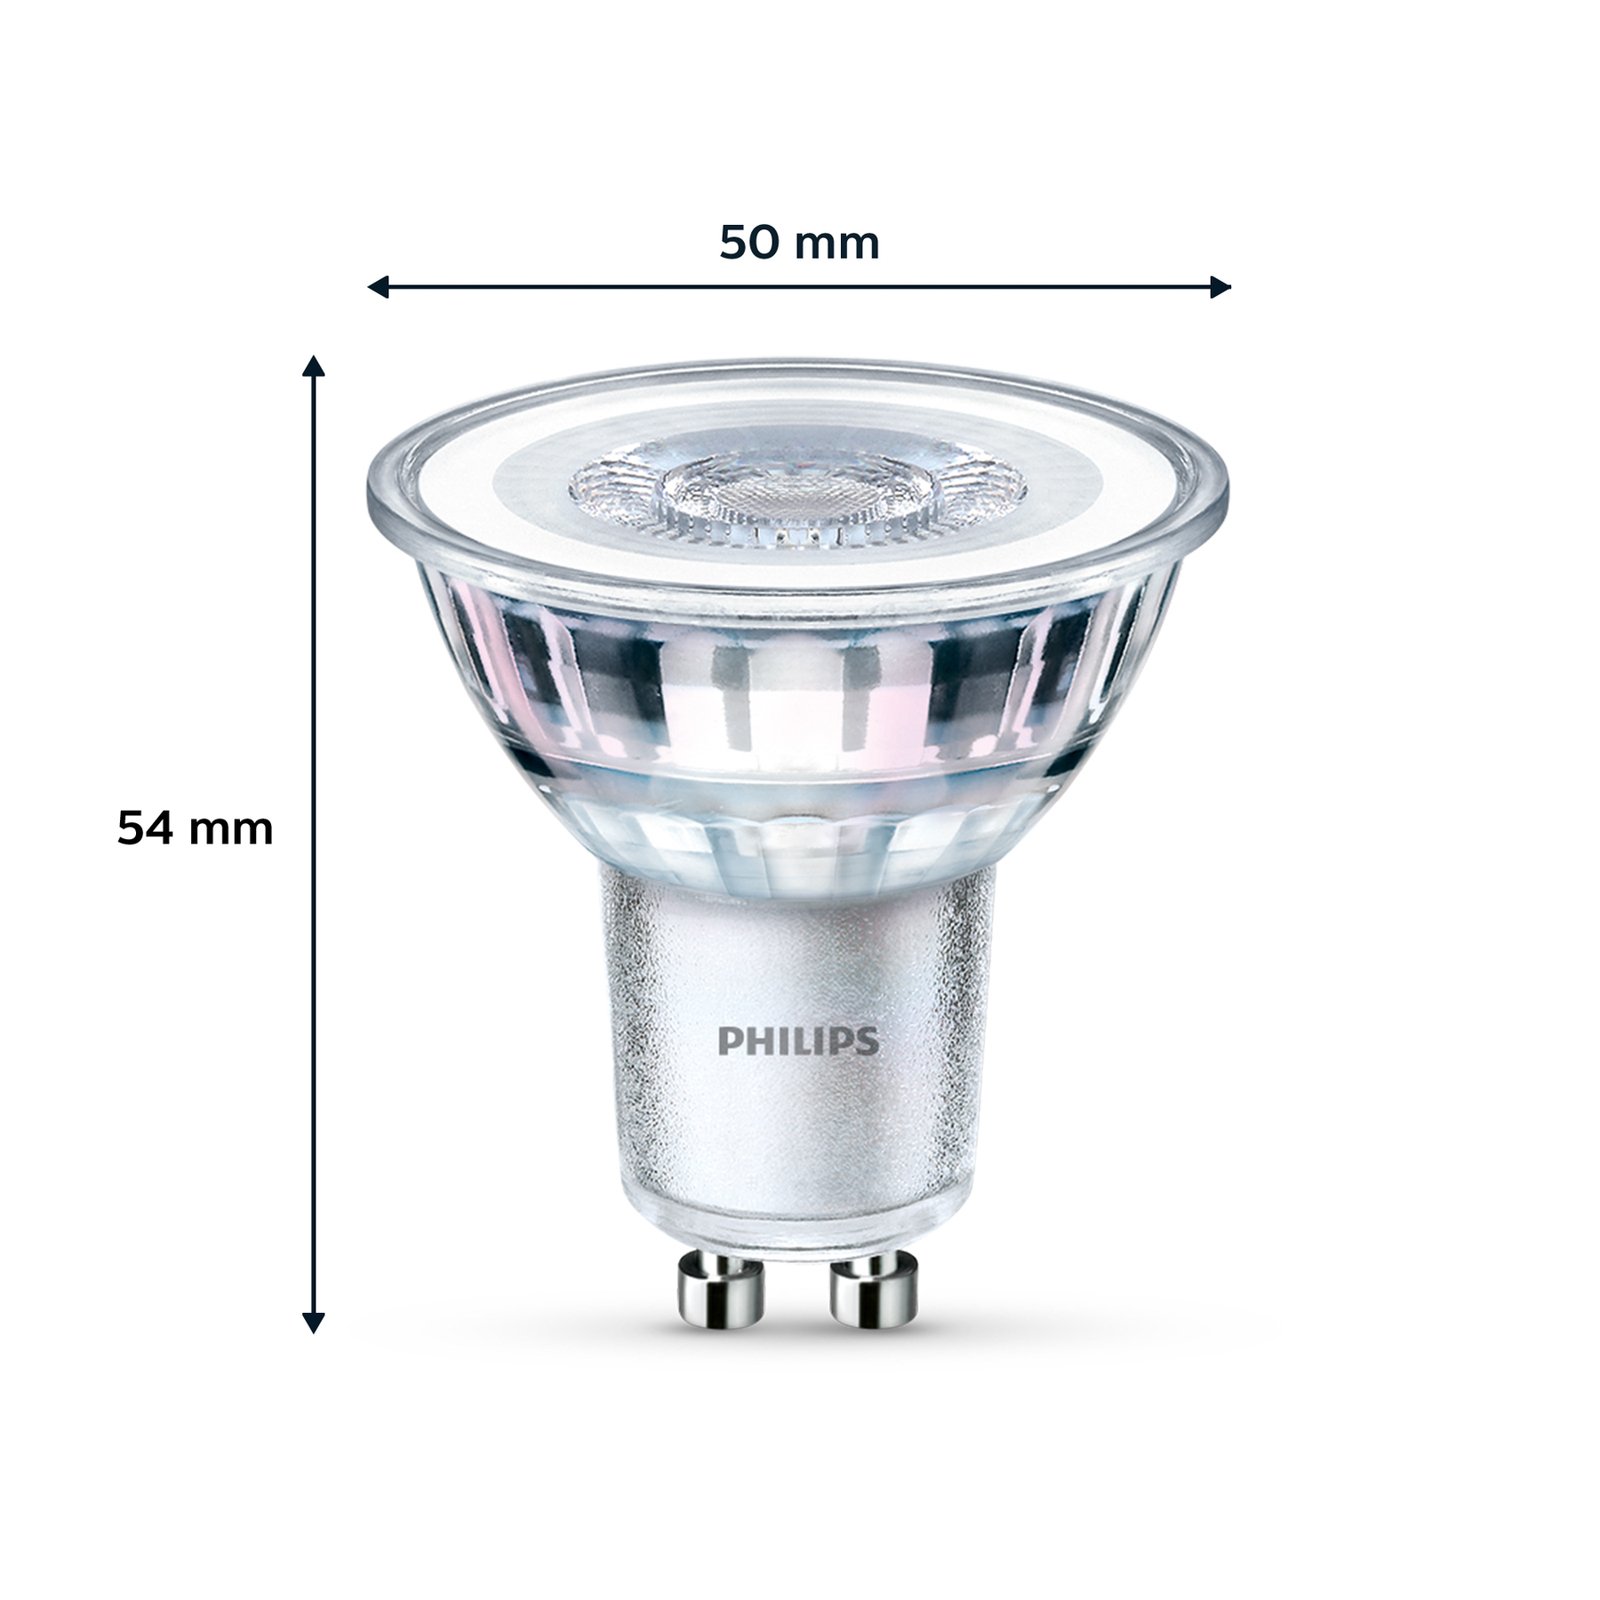 Philips LED-Lampe GU10 4,6W 355lm 827 klar 36° 3er